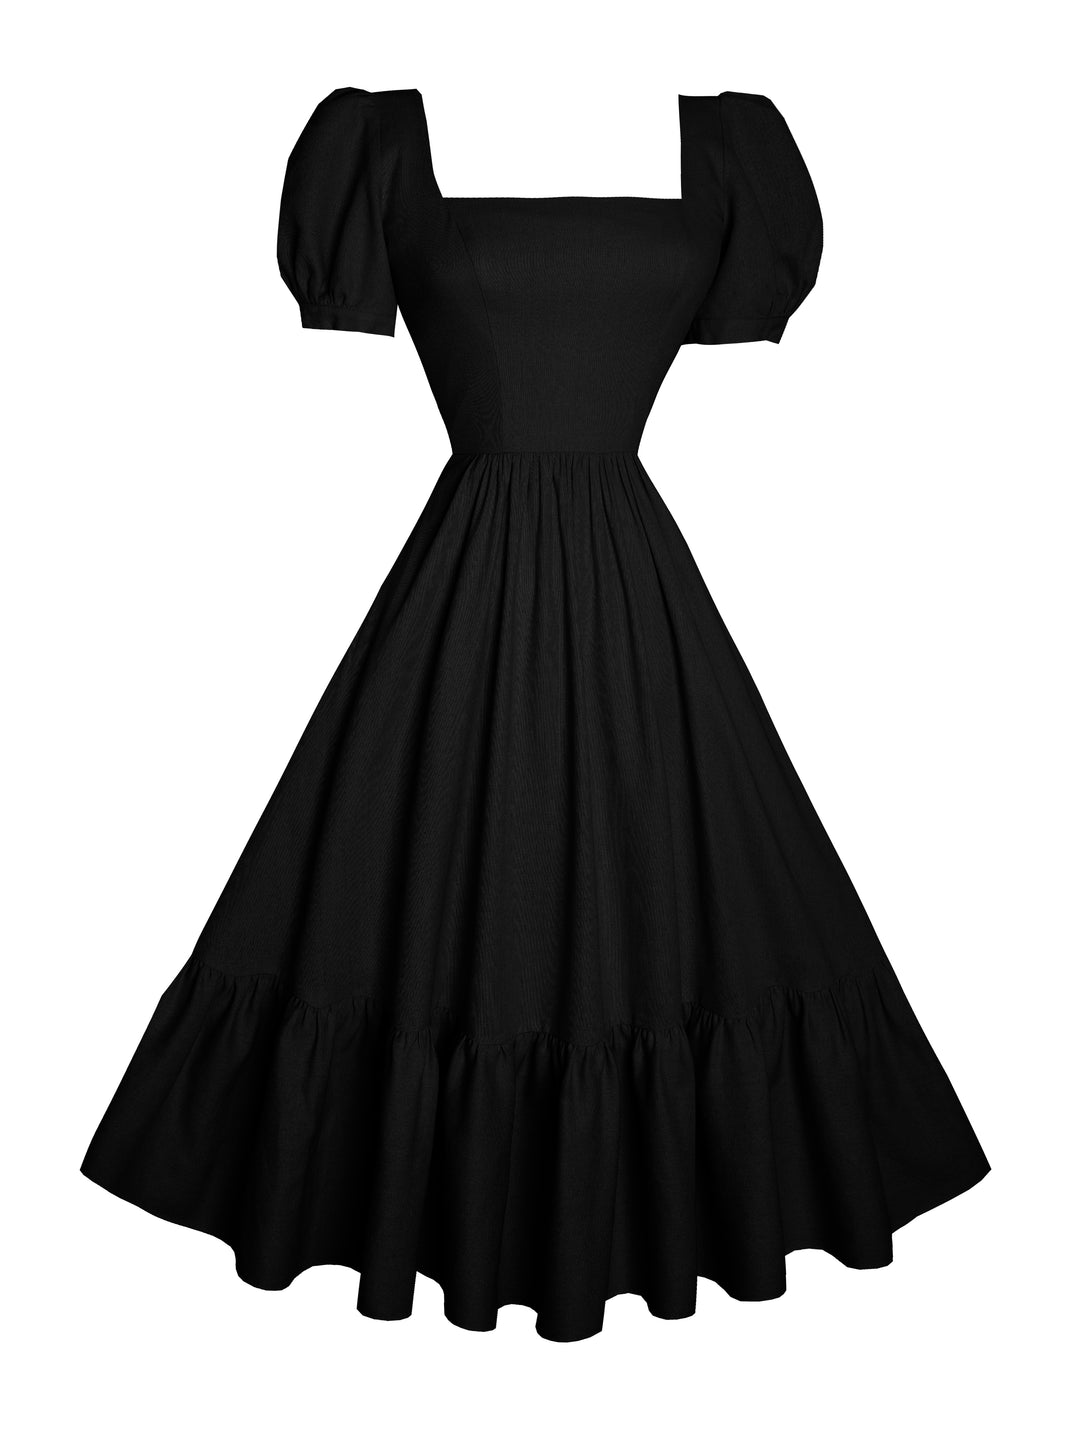 MTO - Isadora Dress in Midnight Black Linen